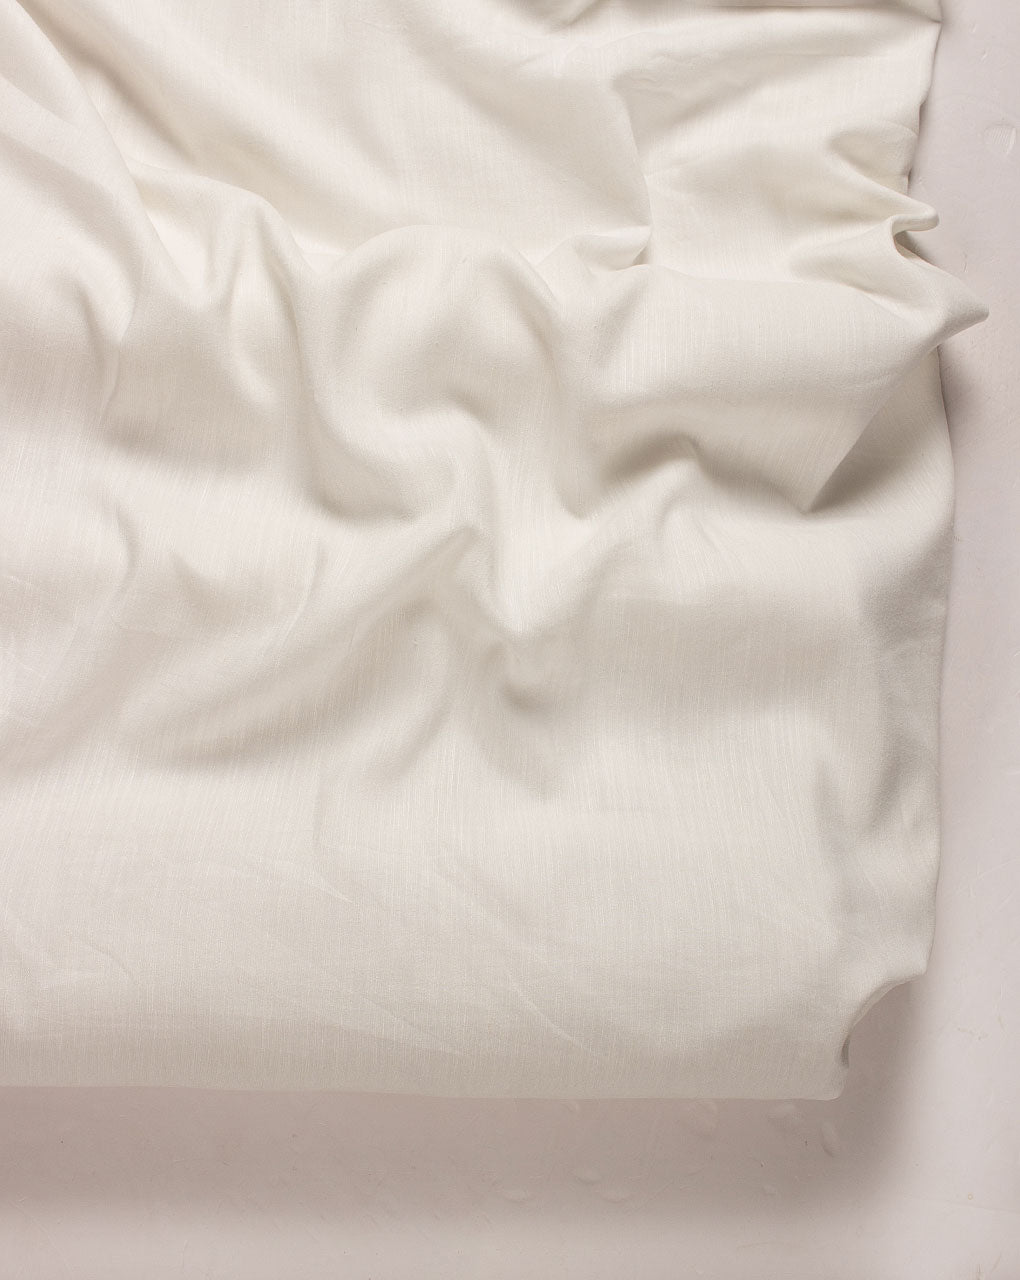 Dyeable Liva Viscose Excel Linen ( Muslin Linen ) Fabric - Fabriclore.com